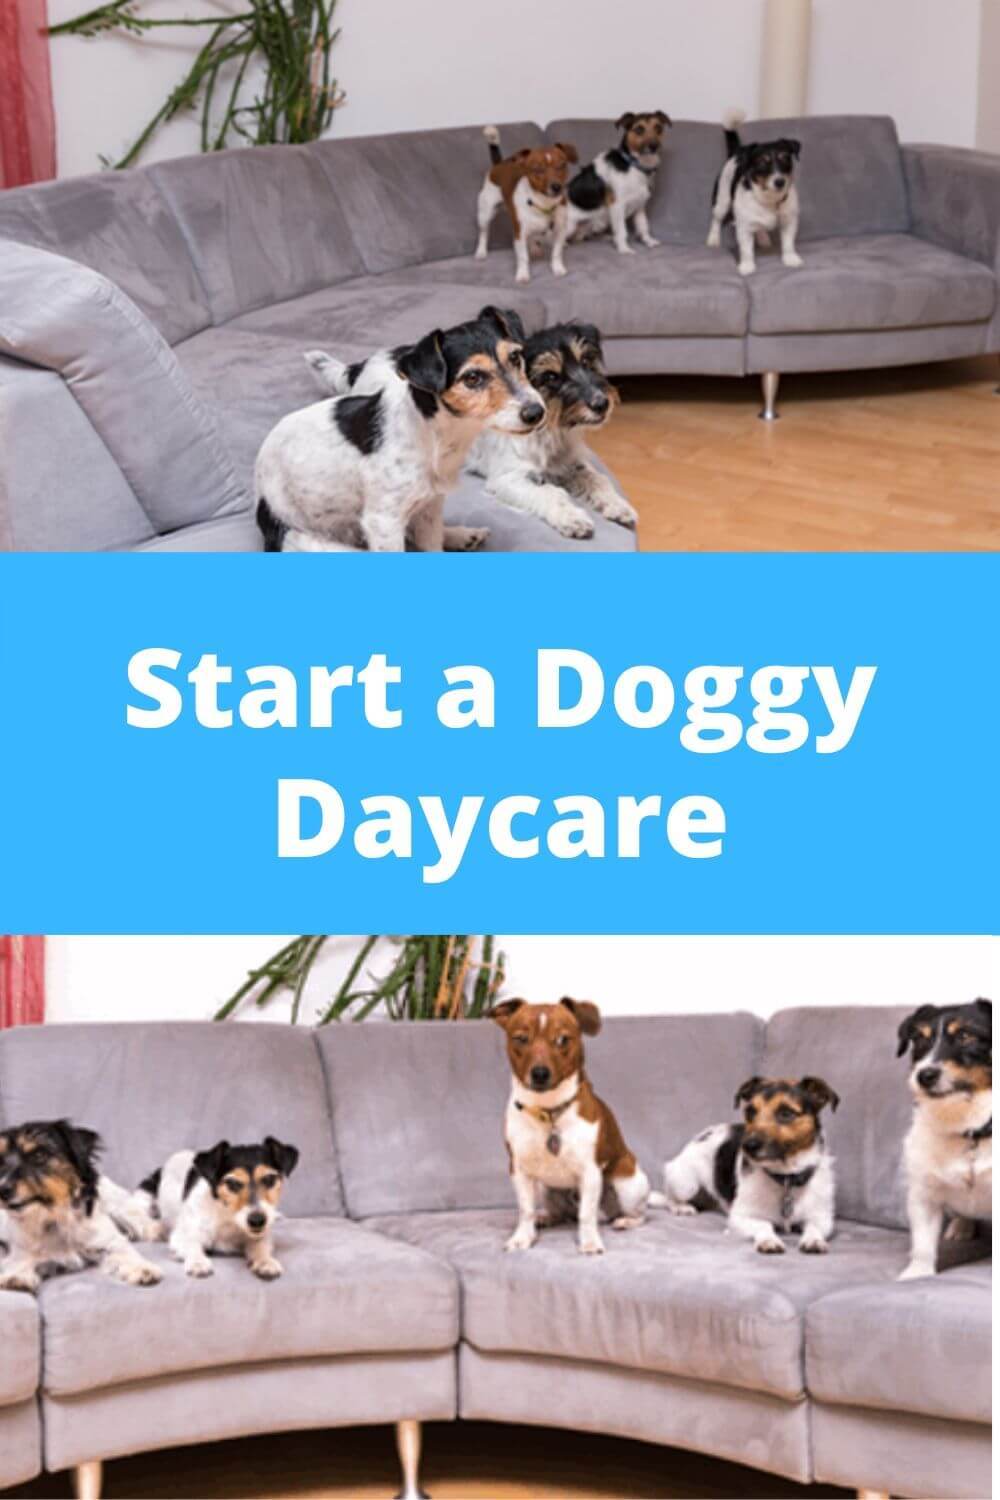 Start a doggy daycare